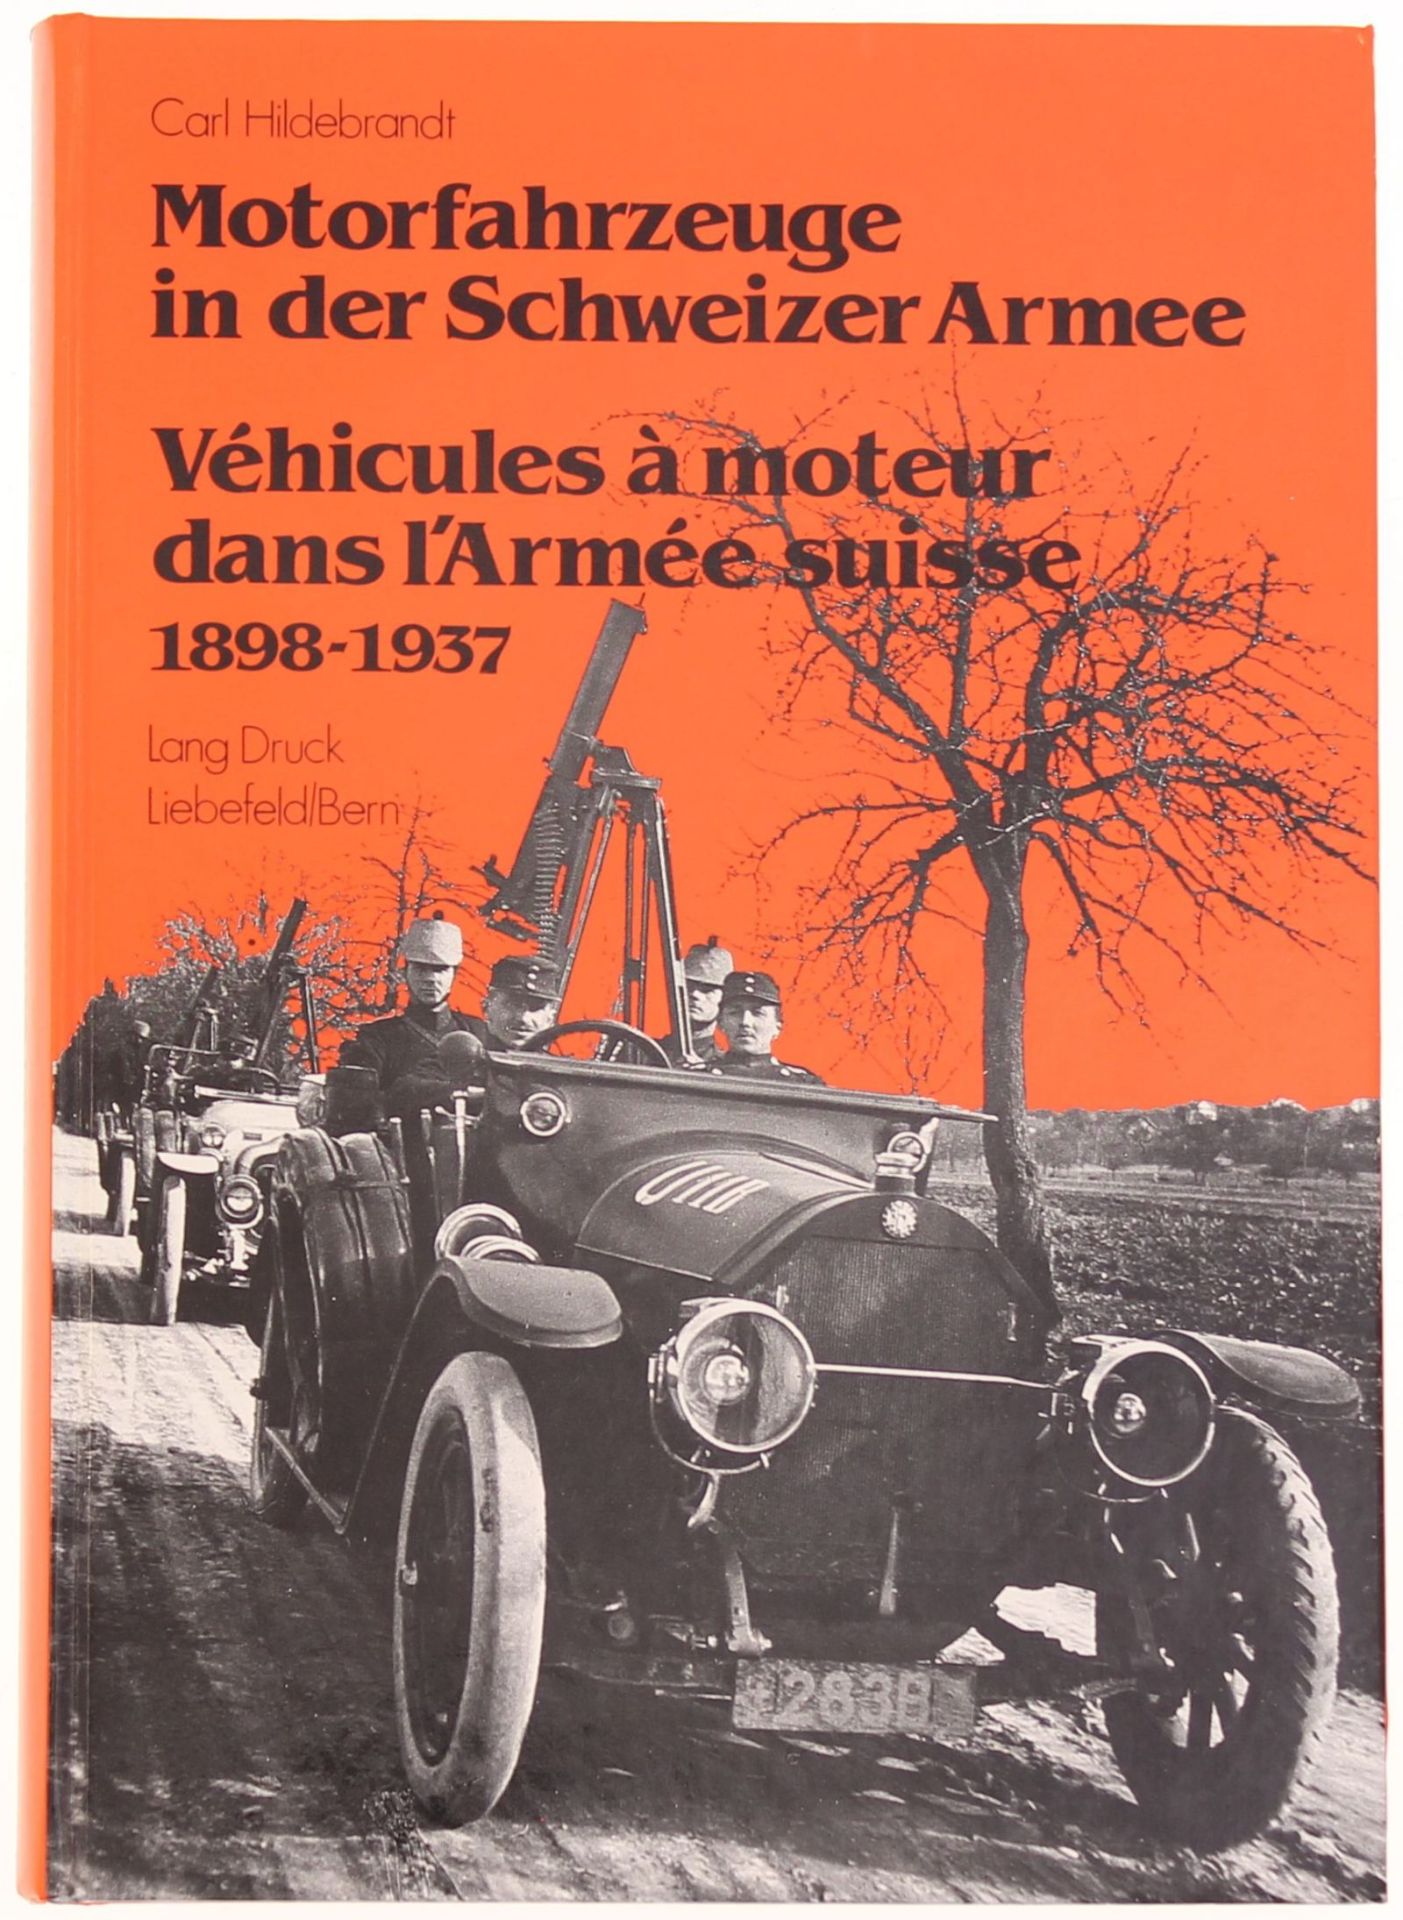 Motorfahrzeuge in der Schweizer Armee 1898-1937 von Carl Hildebrandt. Reich iööustriertes Werk